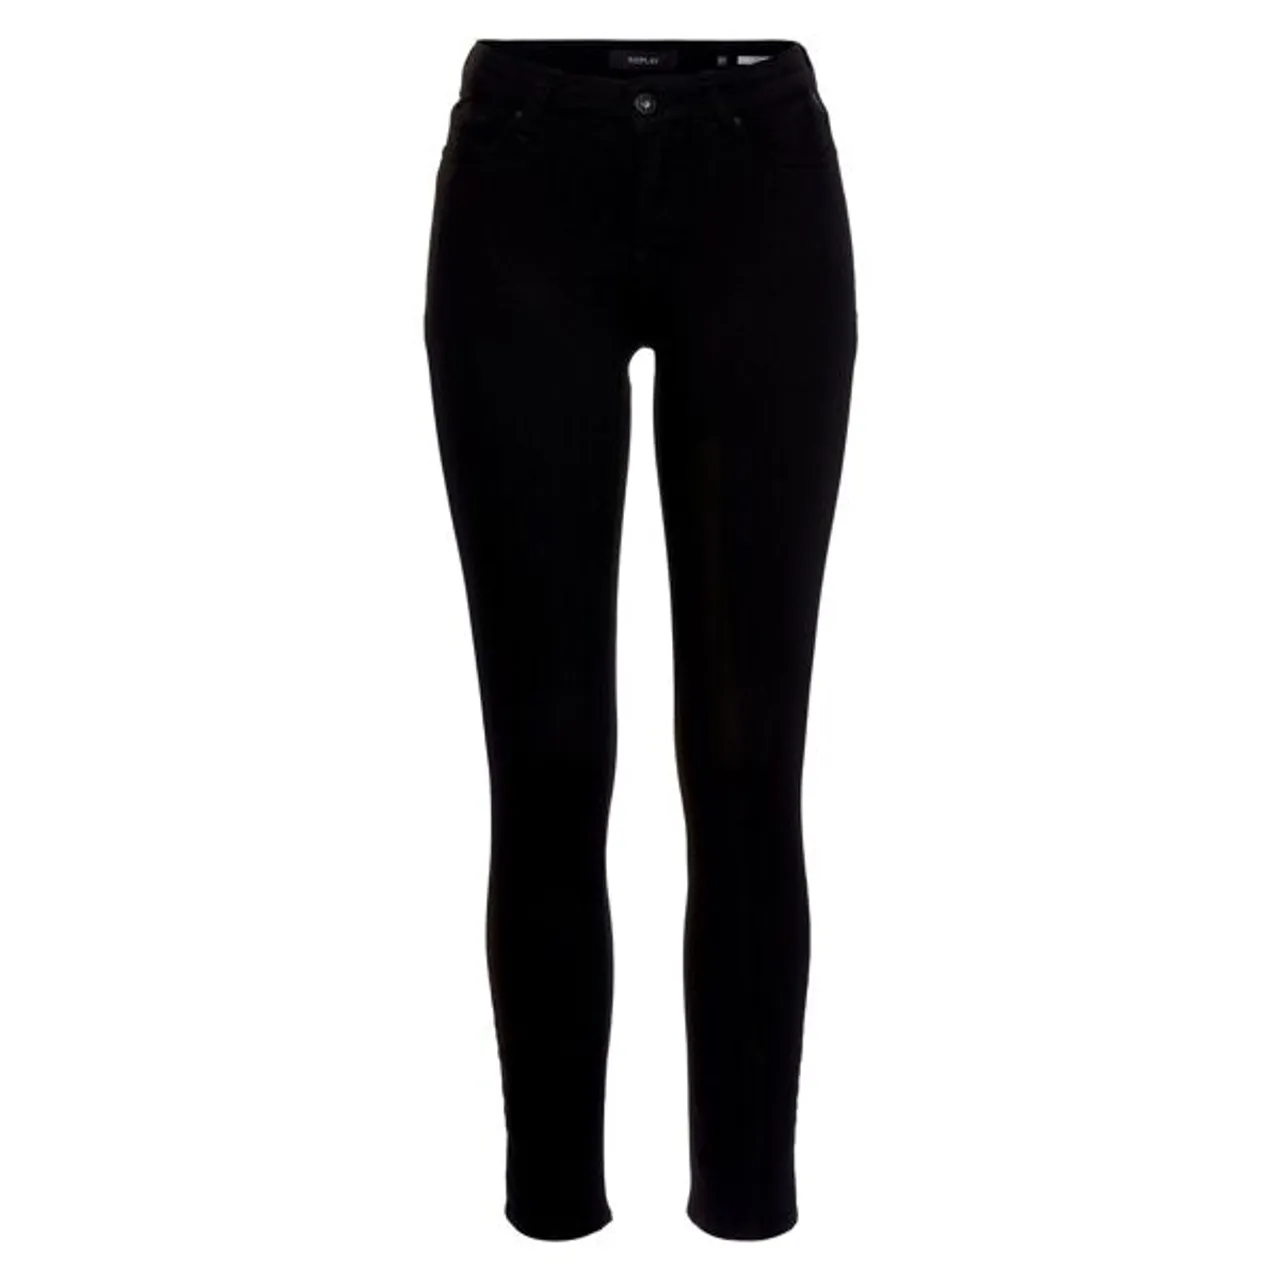 Skinny-fit-Jeans REPLAY "Luzien" Gr. 32, Länge 32, schwarz (black) Damen Jeans Röhrenjeans